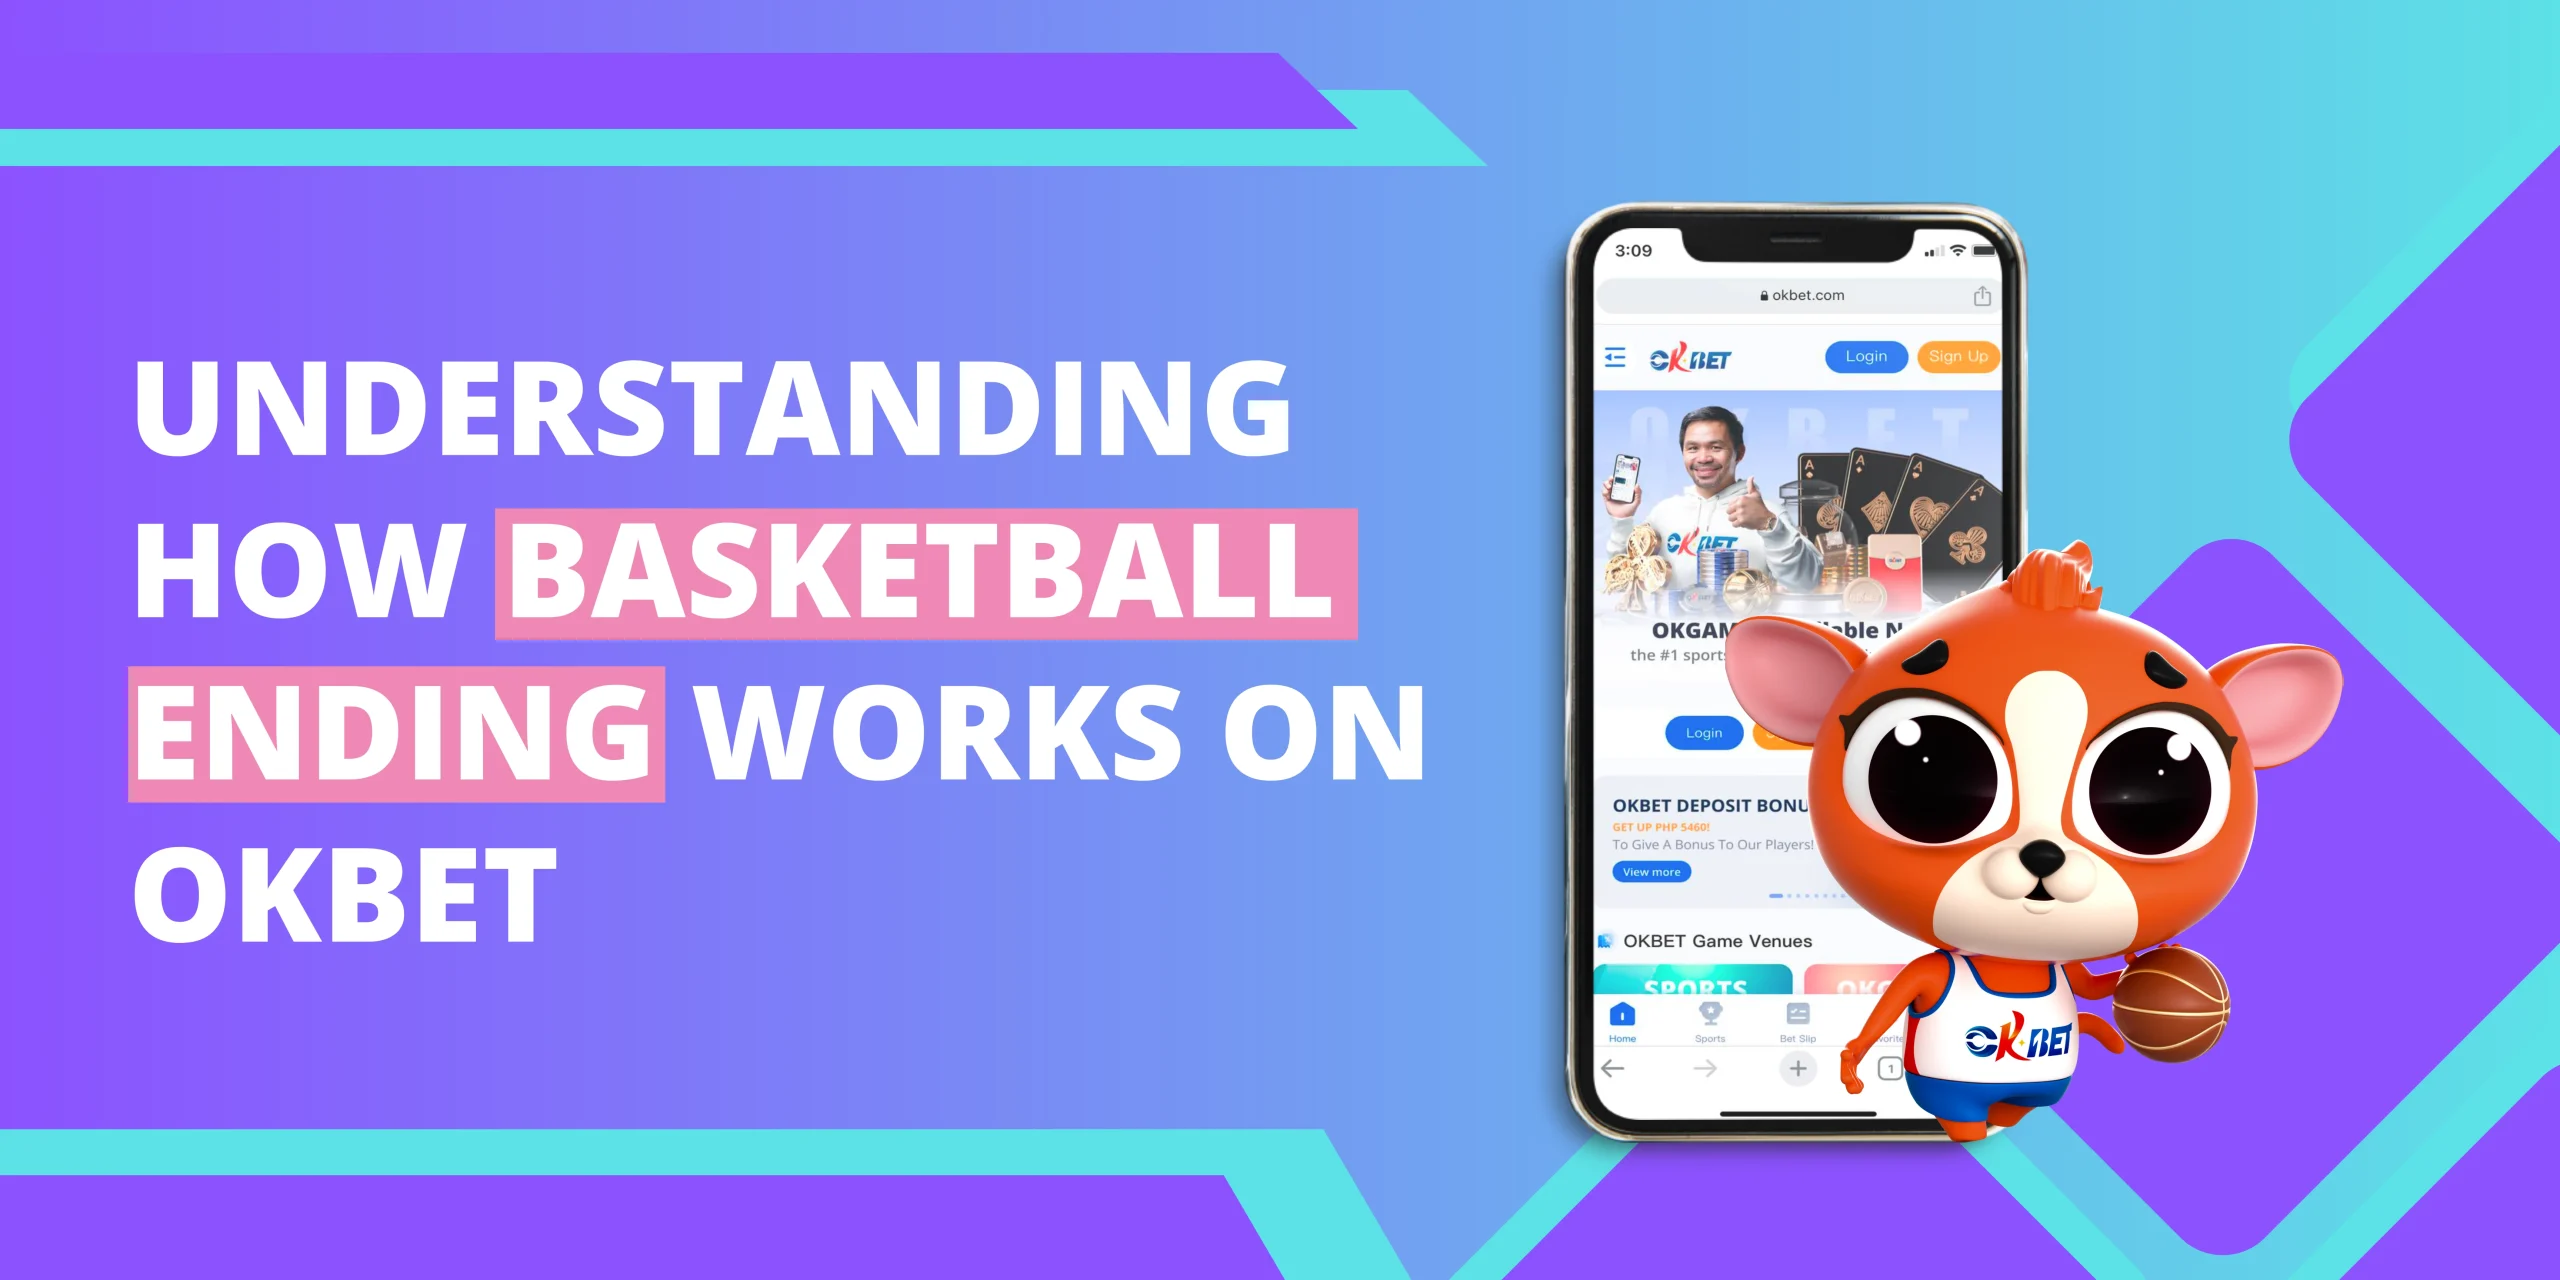 Understanding How Basketball Ending Works on OKBet